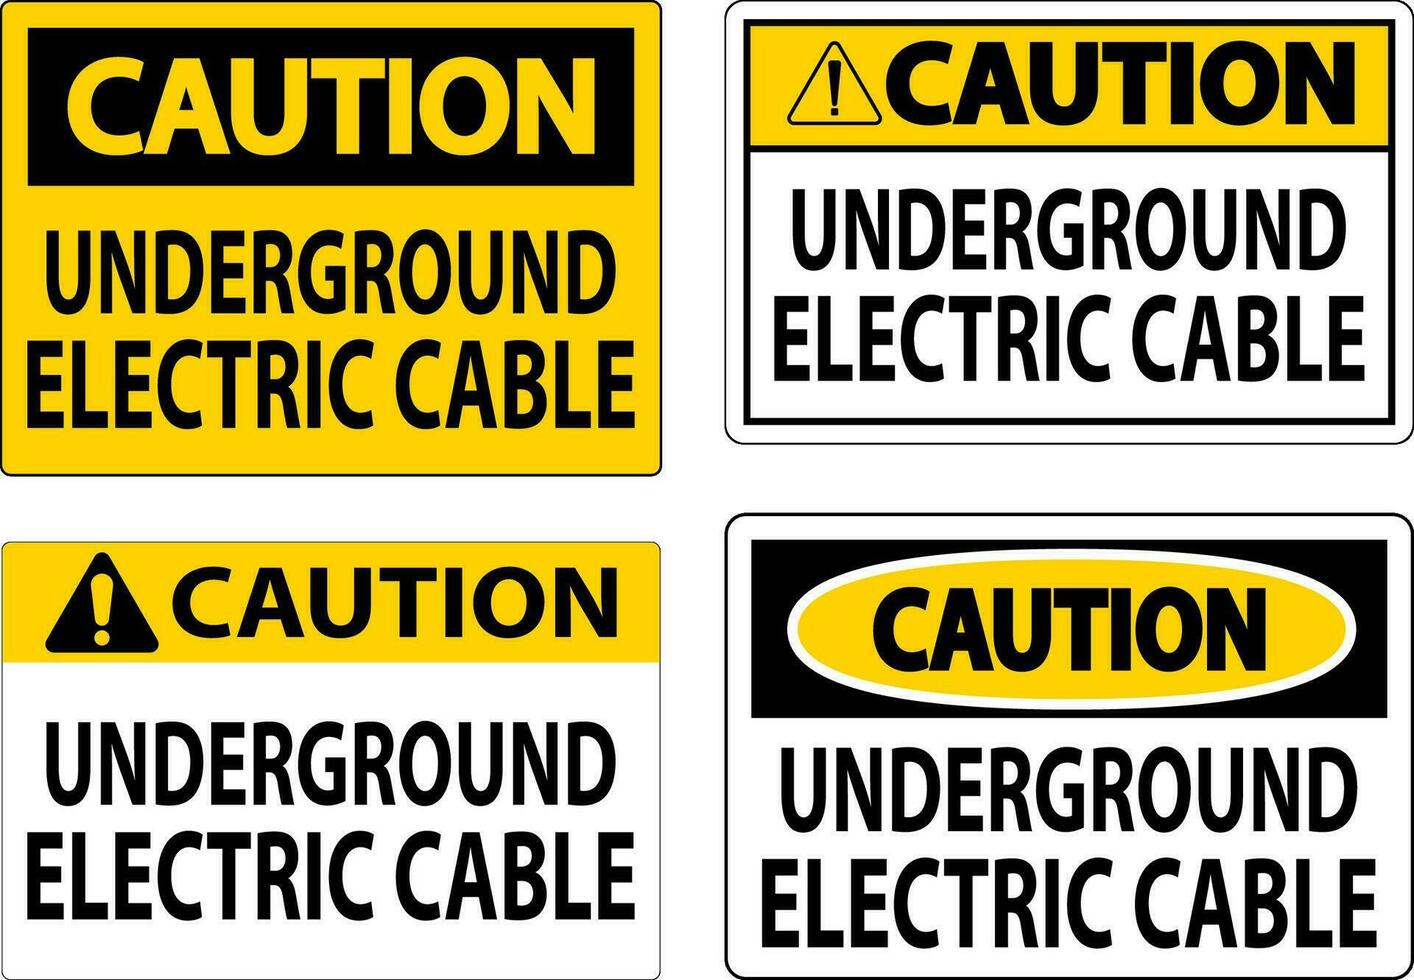 Cuidado sinal, subterrâneo elétrico cabo vetor